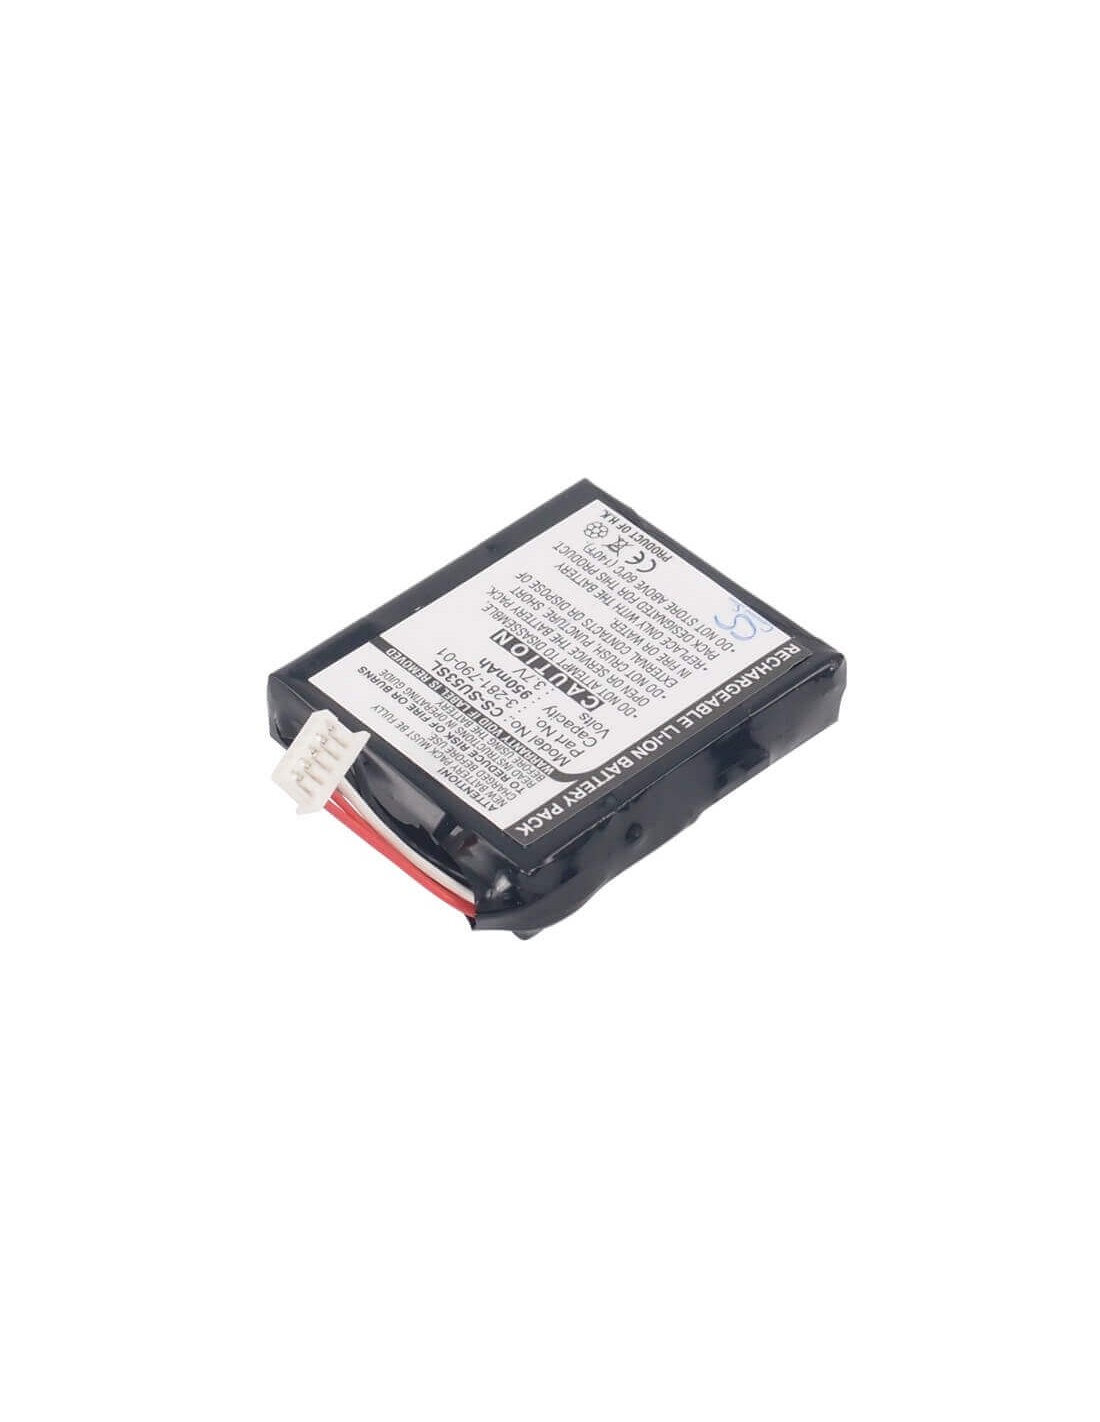 Battery for Sony Nvd-u01n, Nv-u50, Nv-u50t 3.7V, 950mAh - 3.52Wh